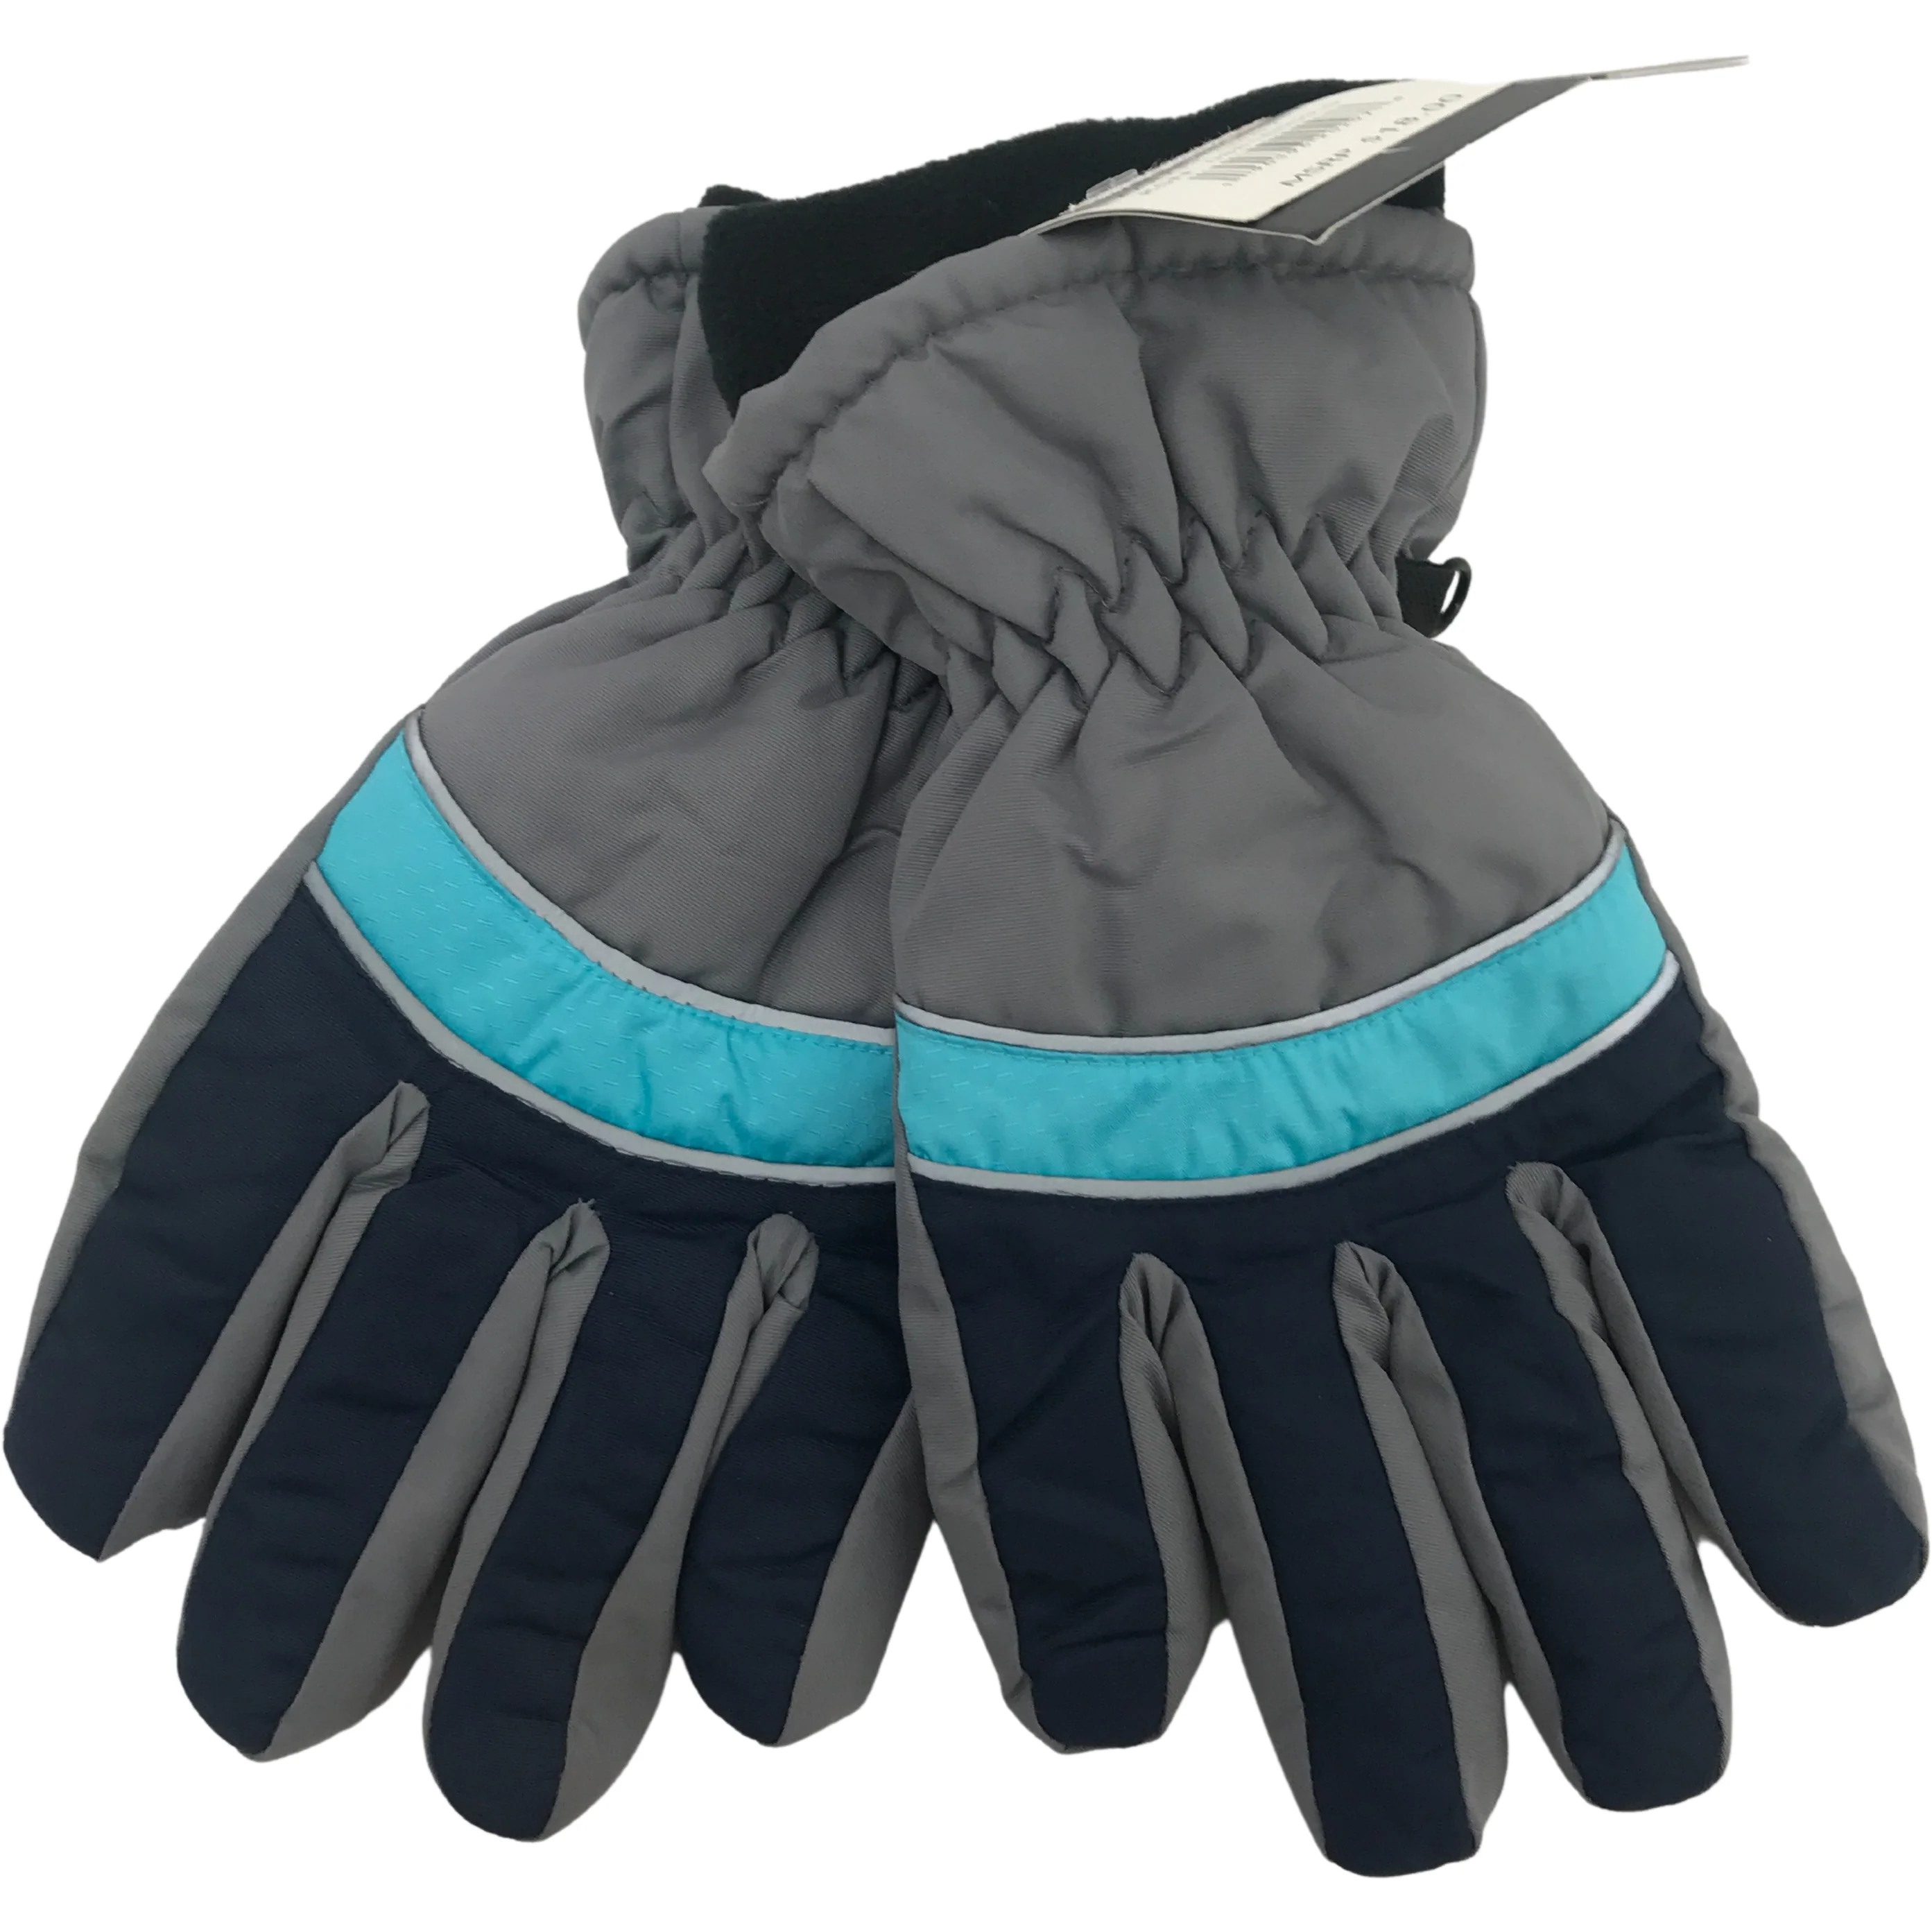 Minus Zero Children's Winter Gloves / Unisex Gloves / Grey with Blue  / Size 8-20